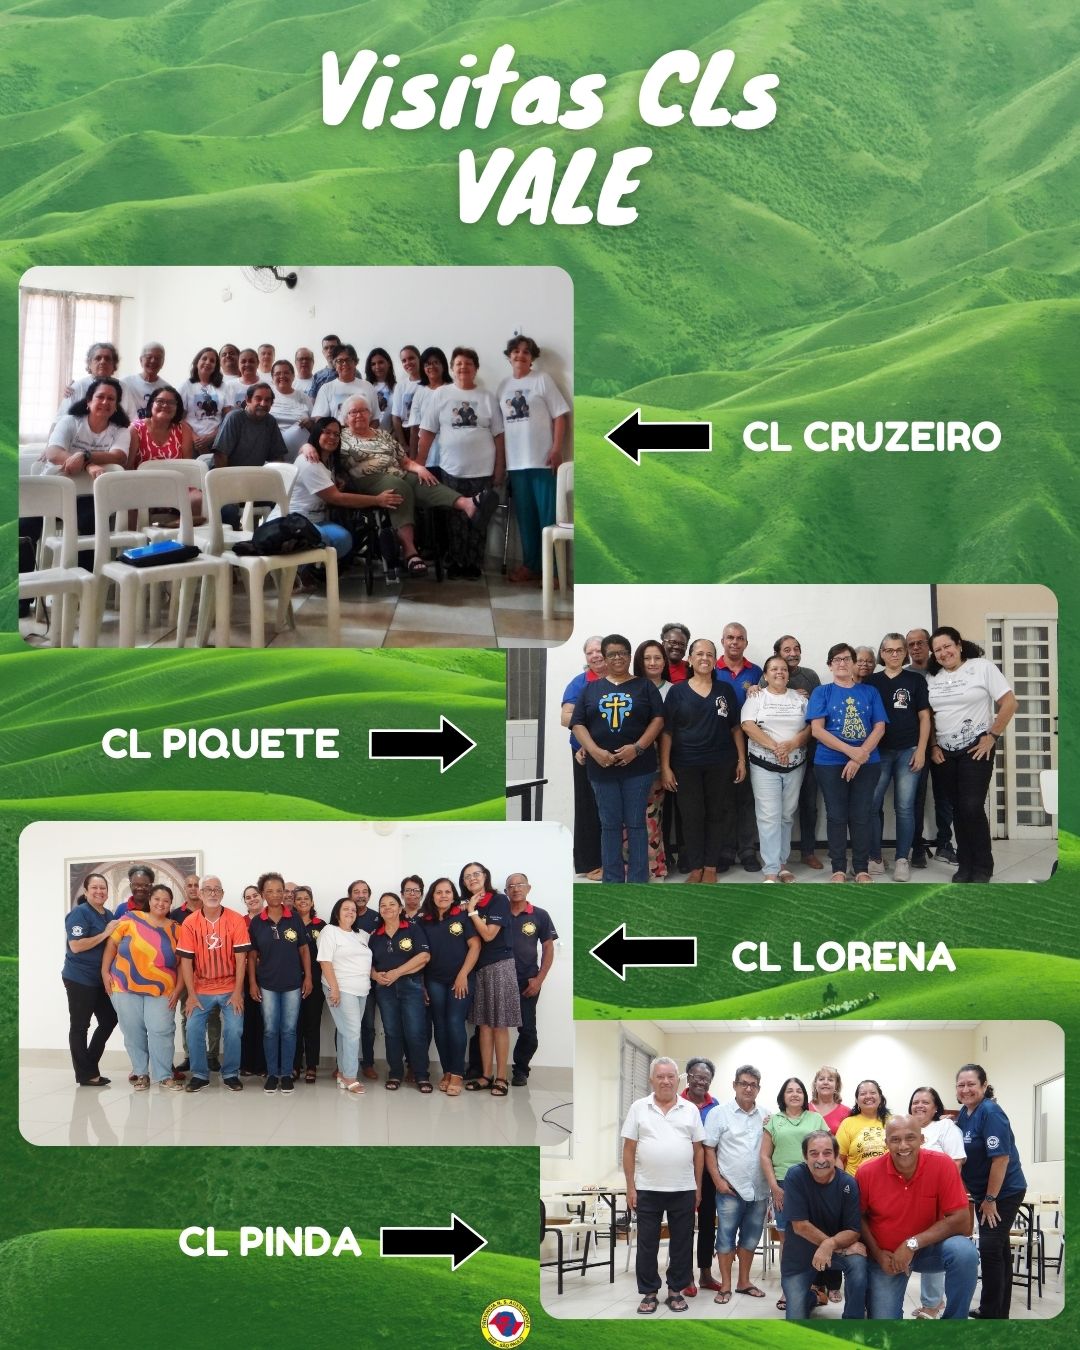 Visitas aos Centros Locais da Província de São Paulo - BSP - Região Vale